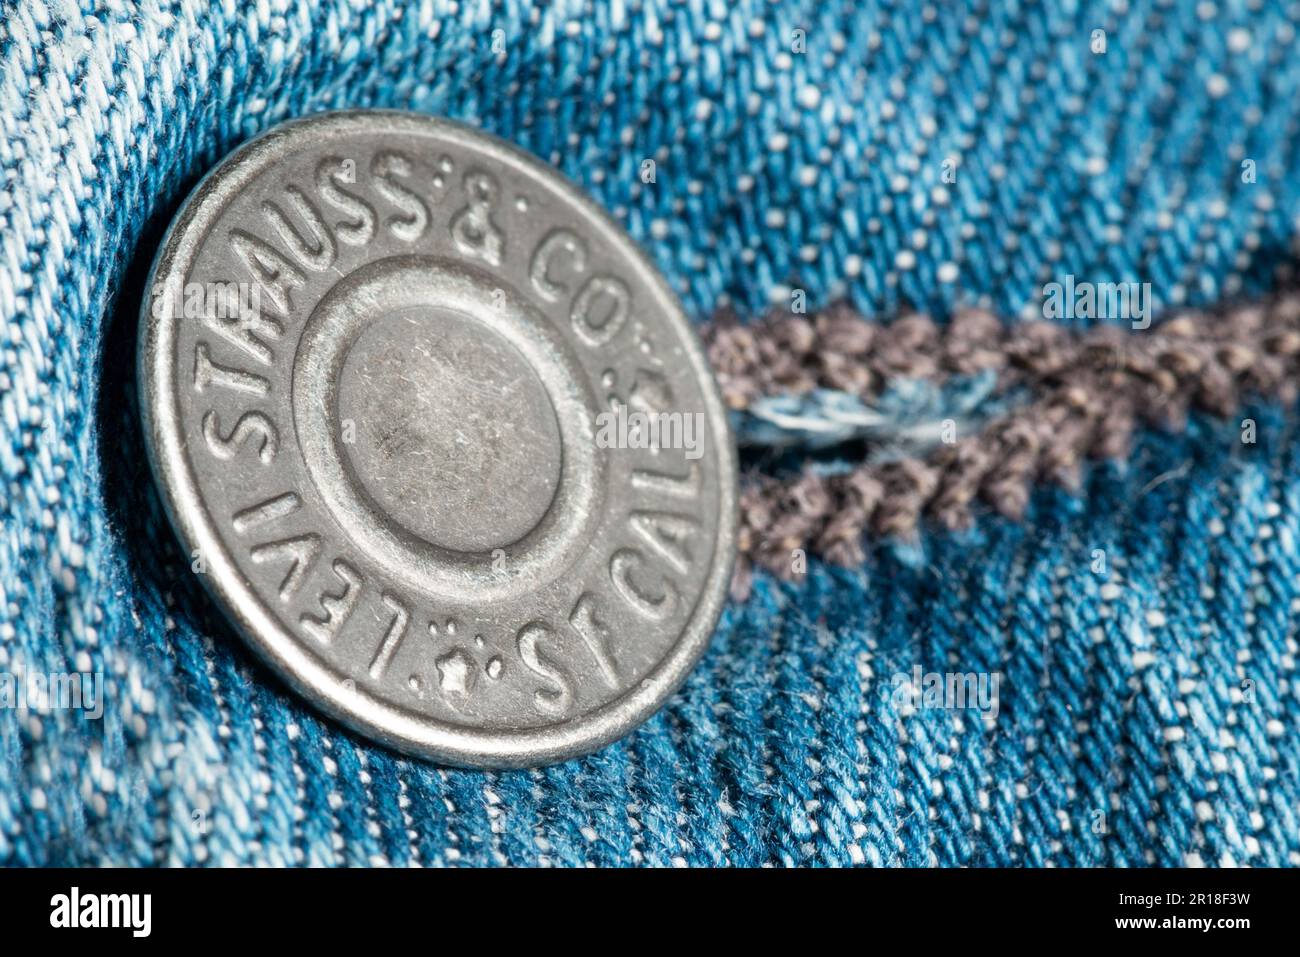 Levi's jeans button close up detail Stock Photo